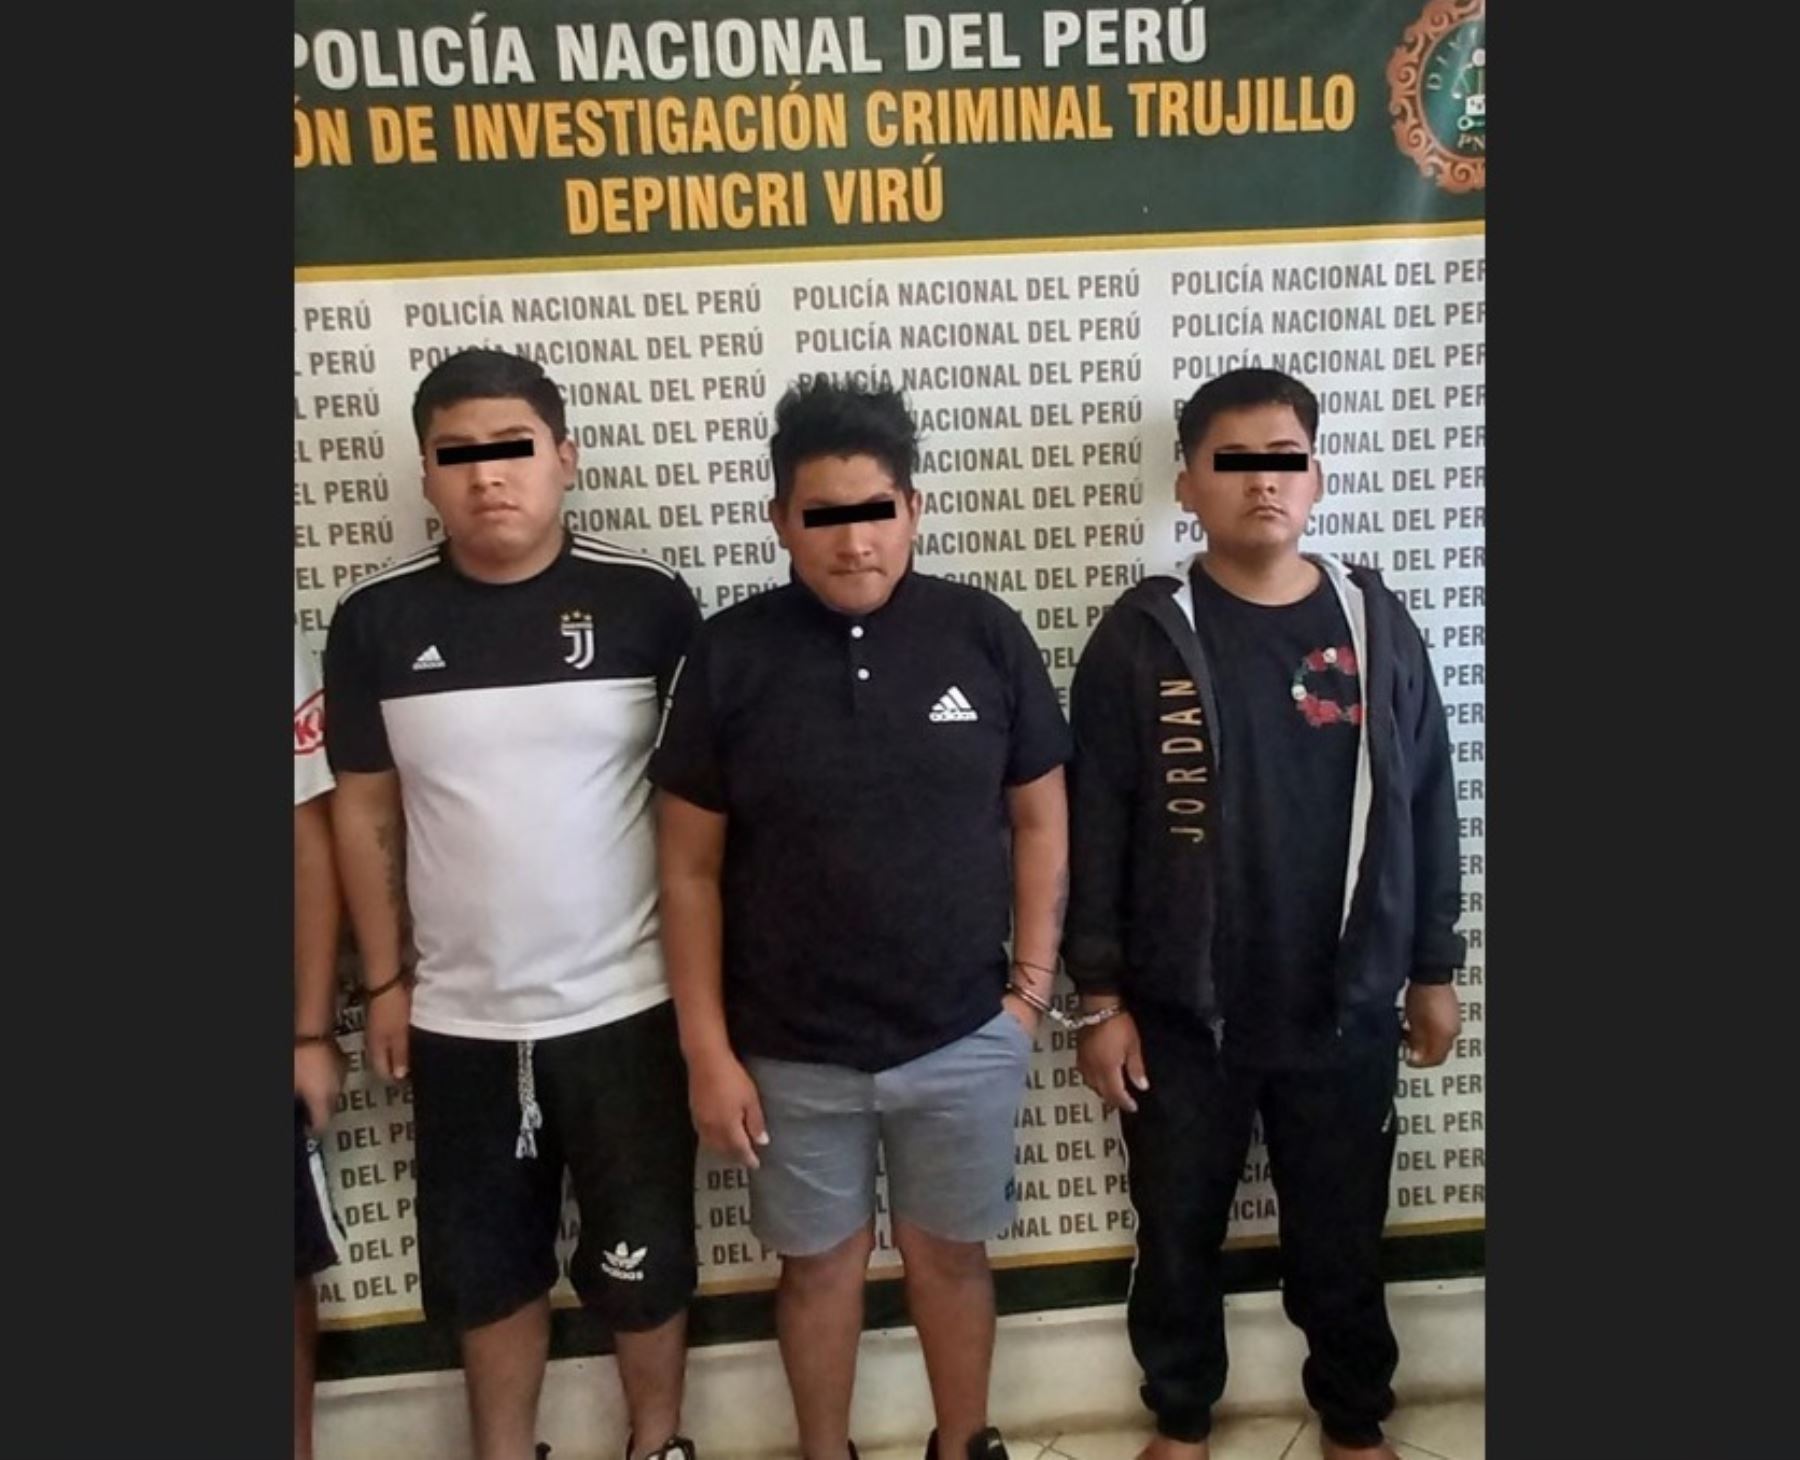 Policía Nacional desarticula banda criminal "Los injertos de Laredo" que operaba en la provincia de Virú, en La Libertad, y captura a cuatro presuntos integrantes. ANDINA/Difusión